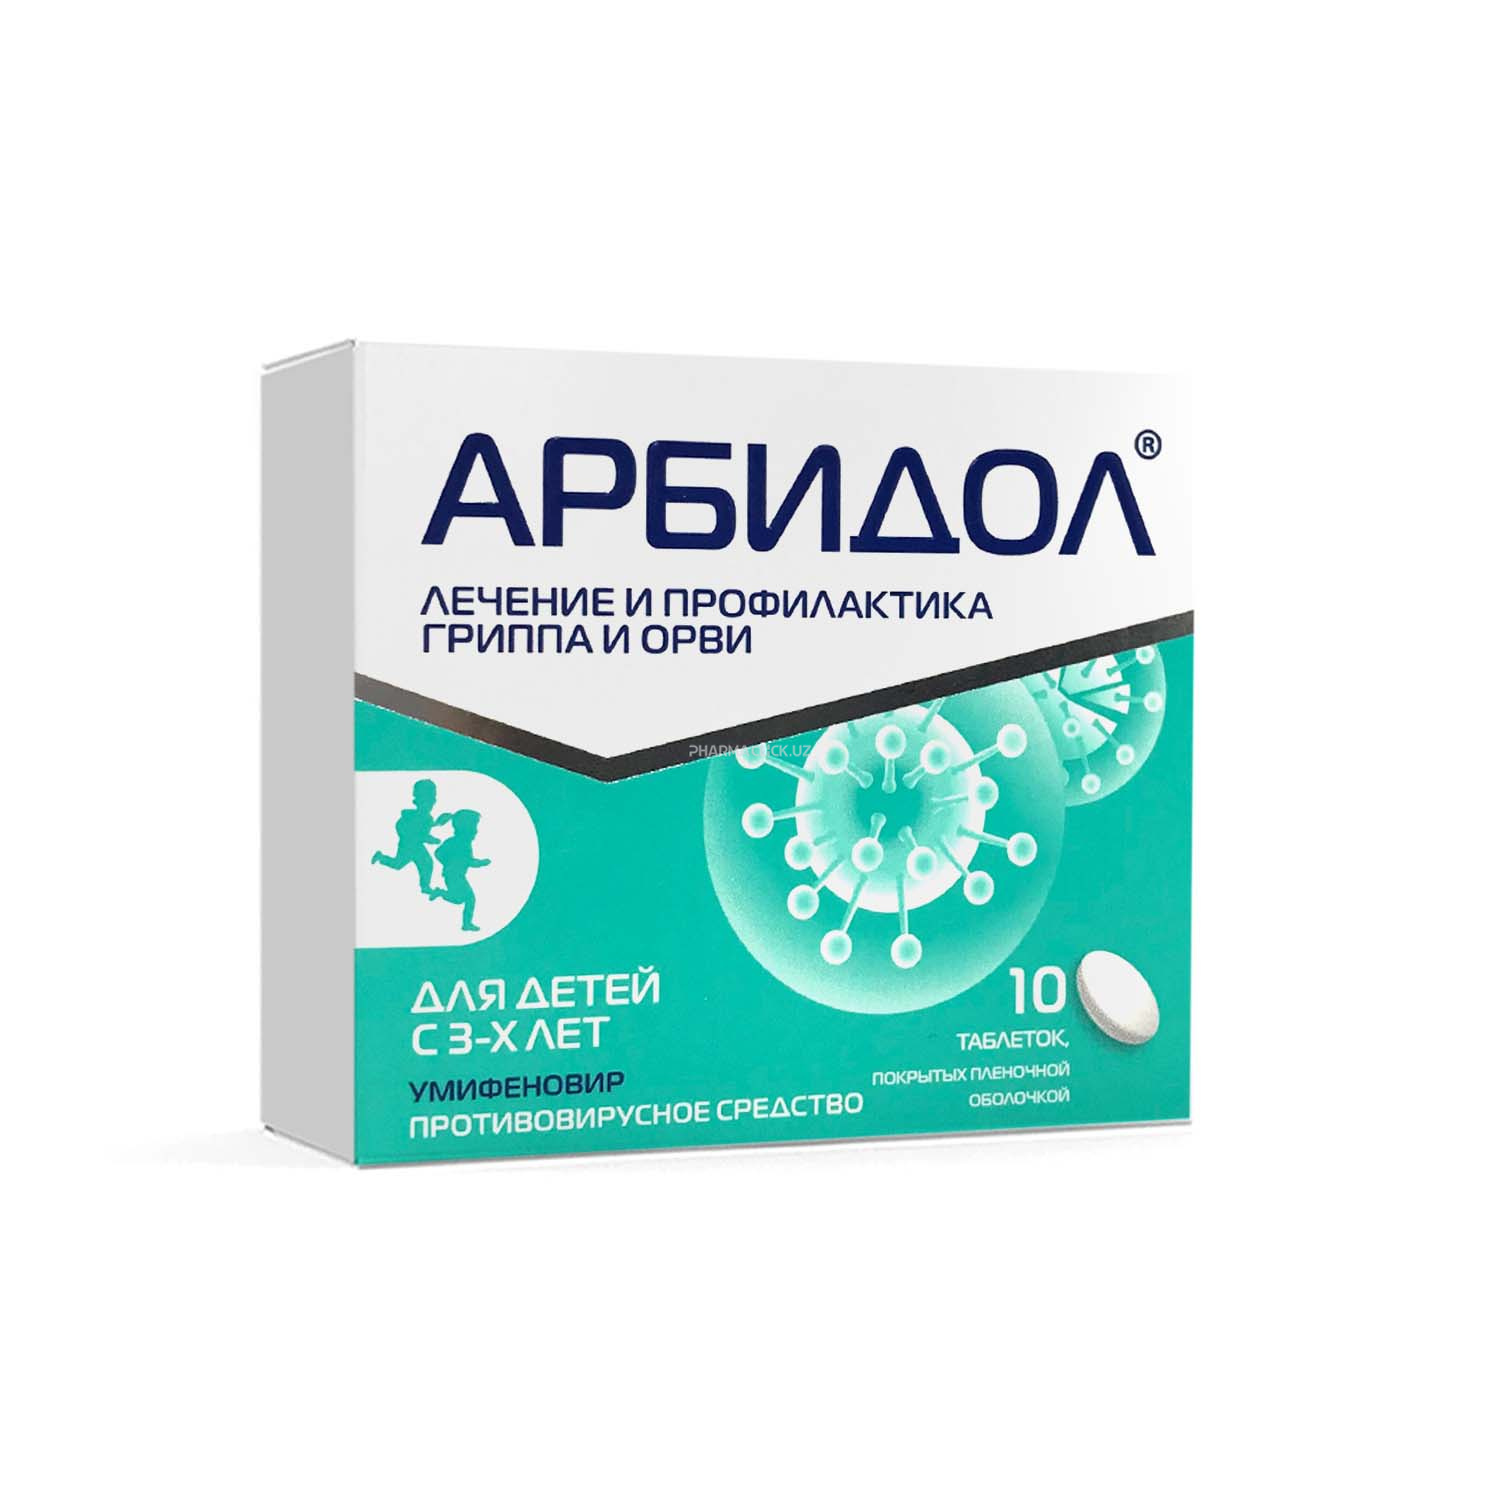 Аrbidol tab plyonka qobiq bilan qoplangan tabletkalar 50 mg №10